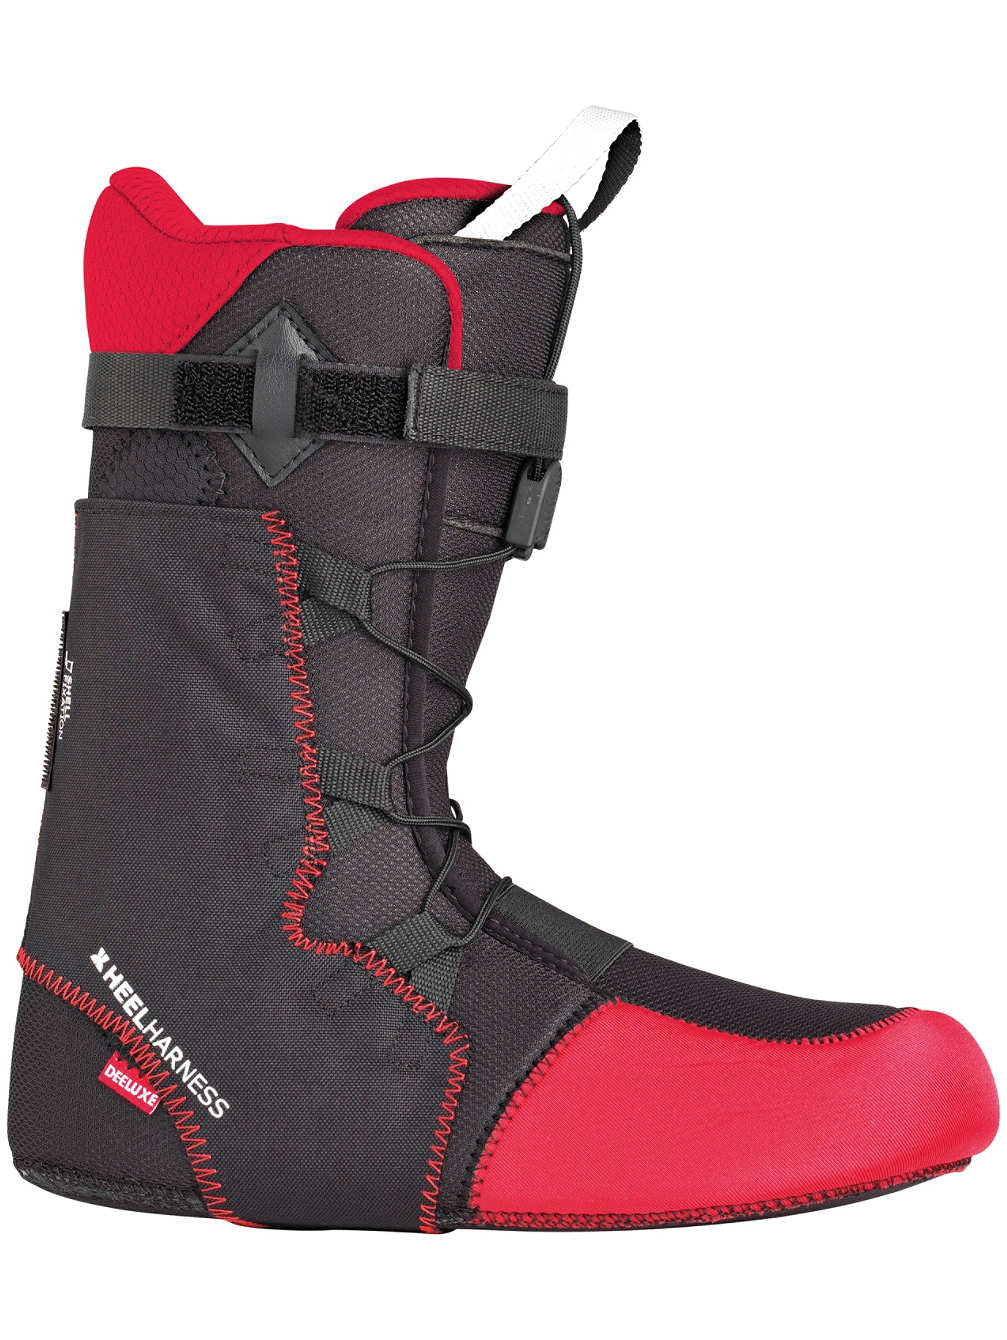 Wkładki do butów snowboardowych Thermo Flex Deeluxe Premium Liner, rozmiar 43,5/28,5cm